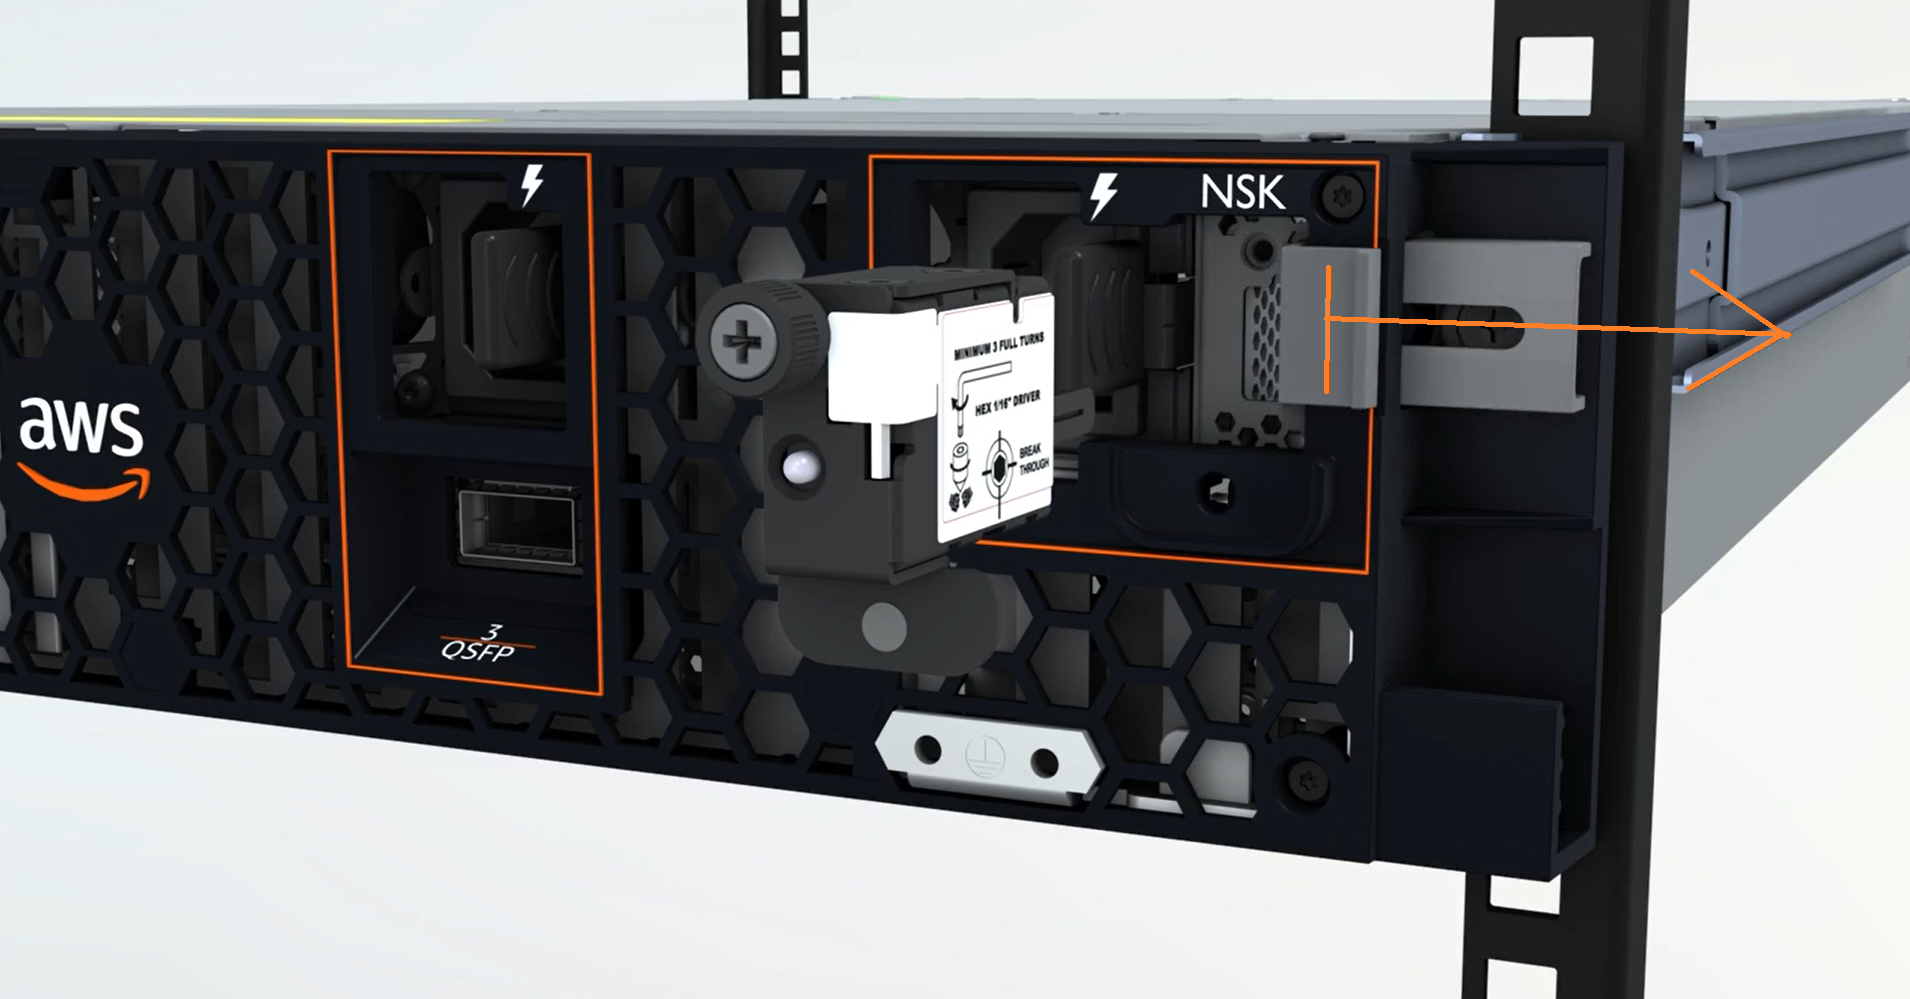 连接到 2U 服务器的 NSK 的图像。